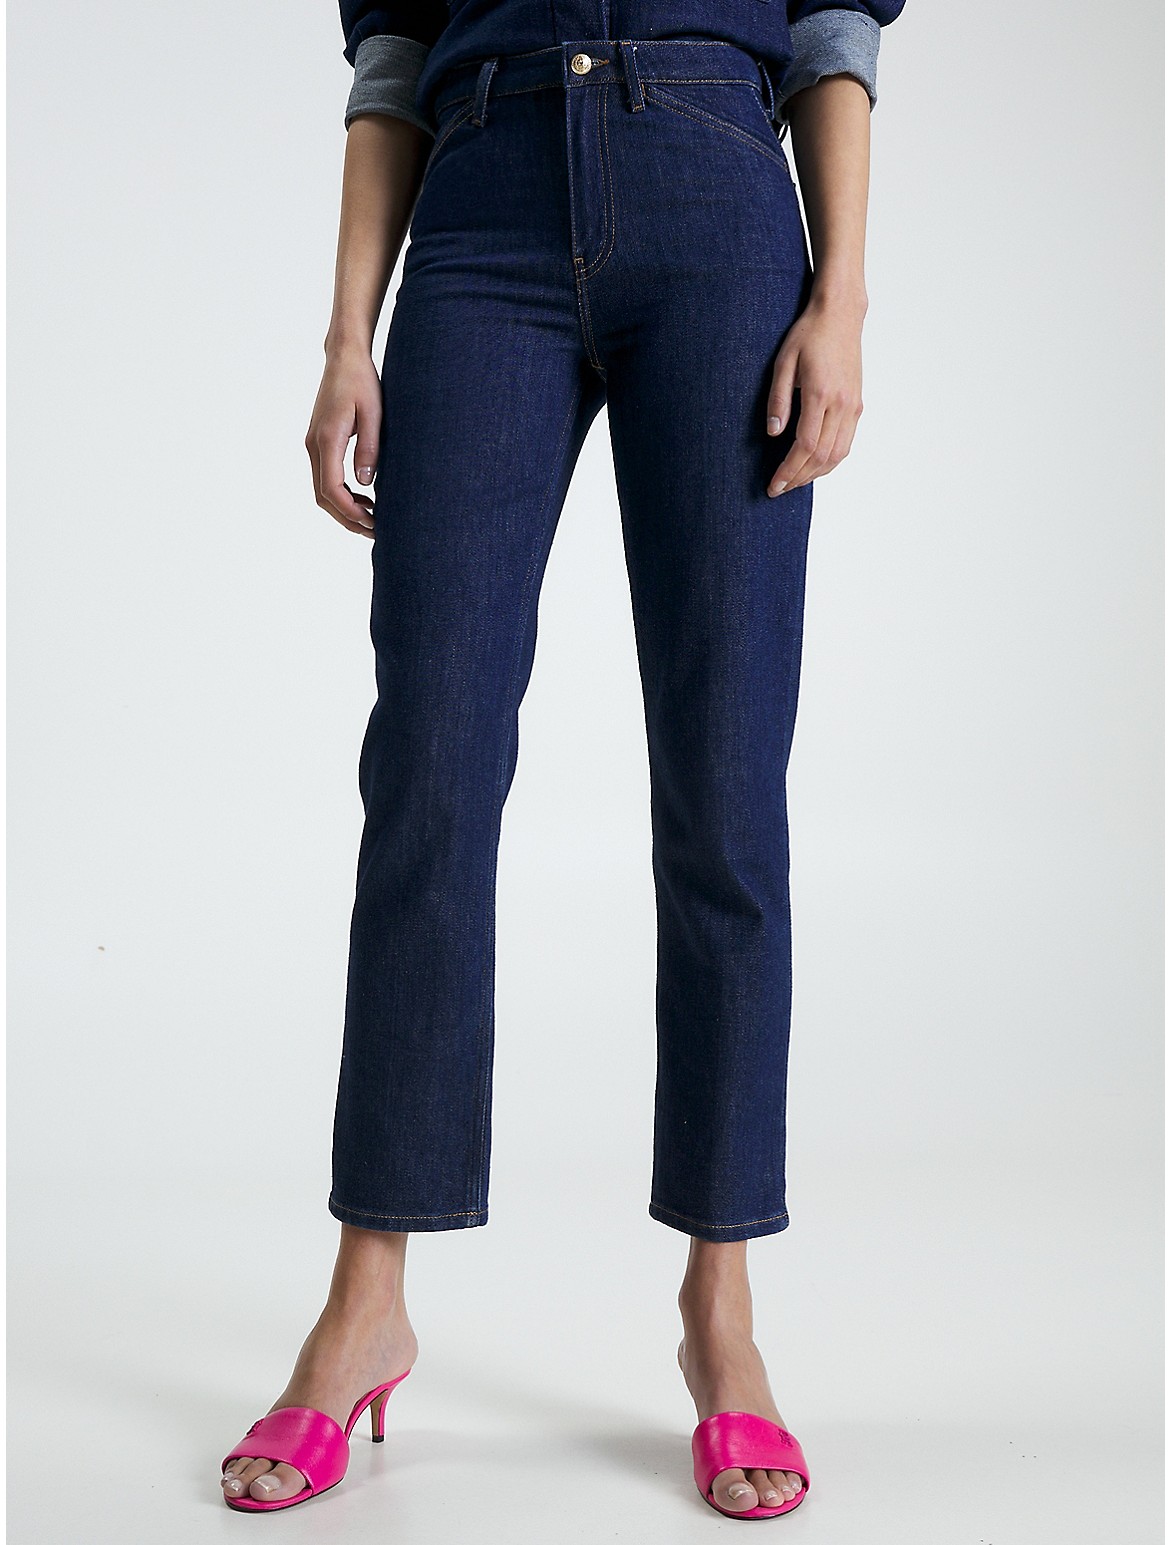 Tommy Hilfiger Women's High-Waist Straight Fit Jean - Blue - 28W x 32L